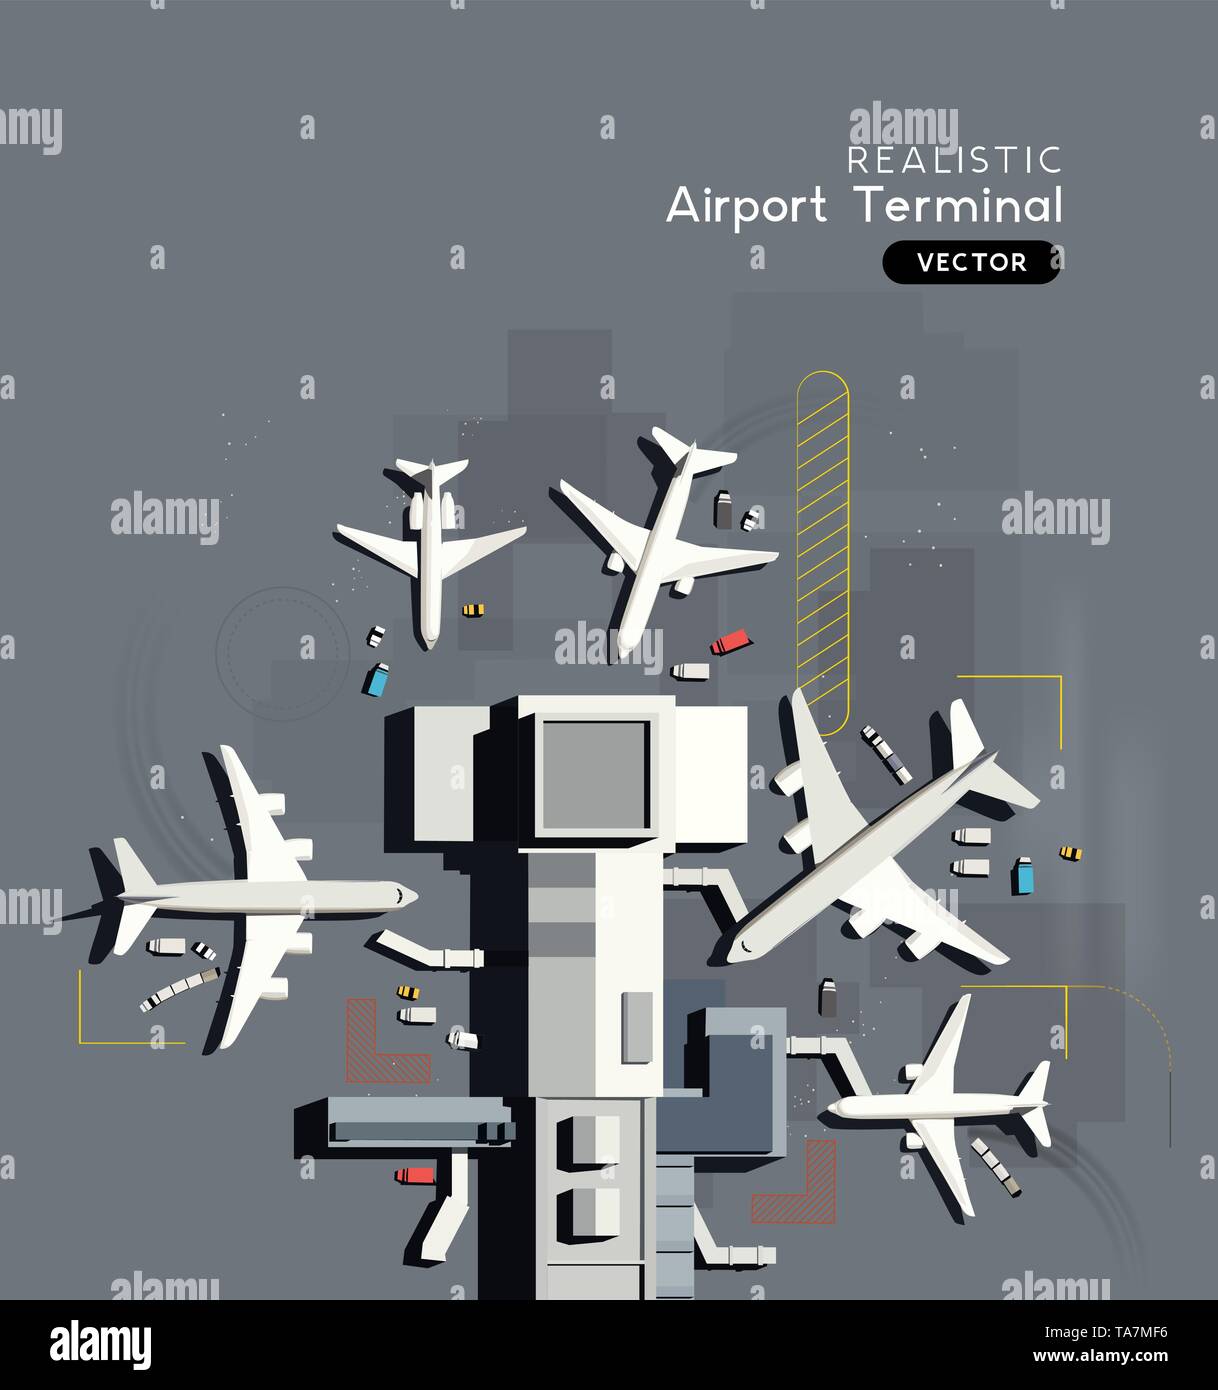 De haut en bas Vue aérienne d'un terminal d'aéroport avec les avions commerciaux en stationnement. Vector illustration. Illustration de Vecteur